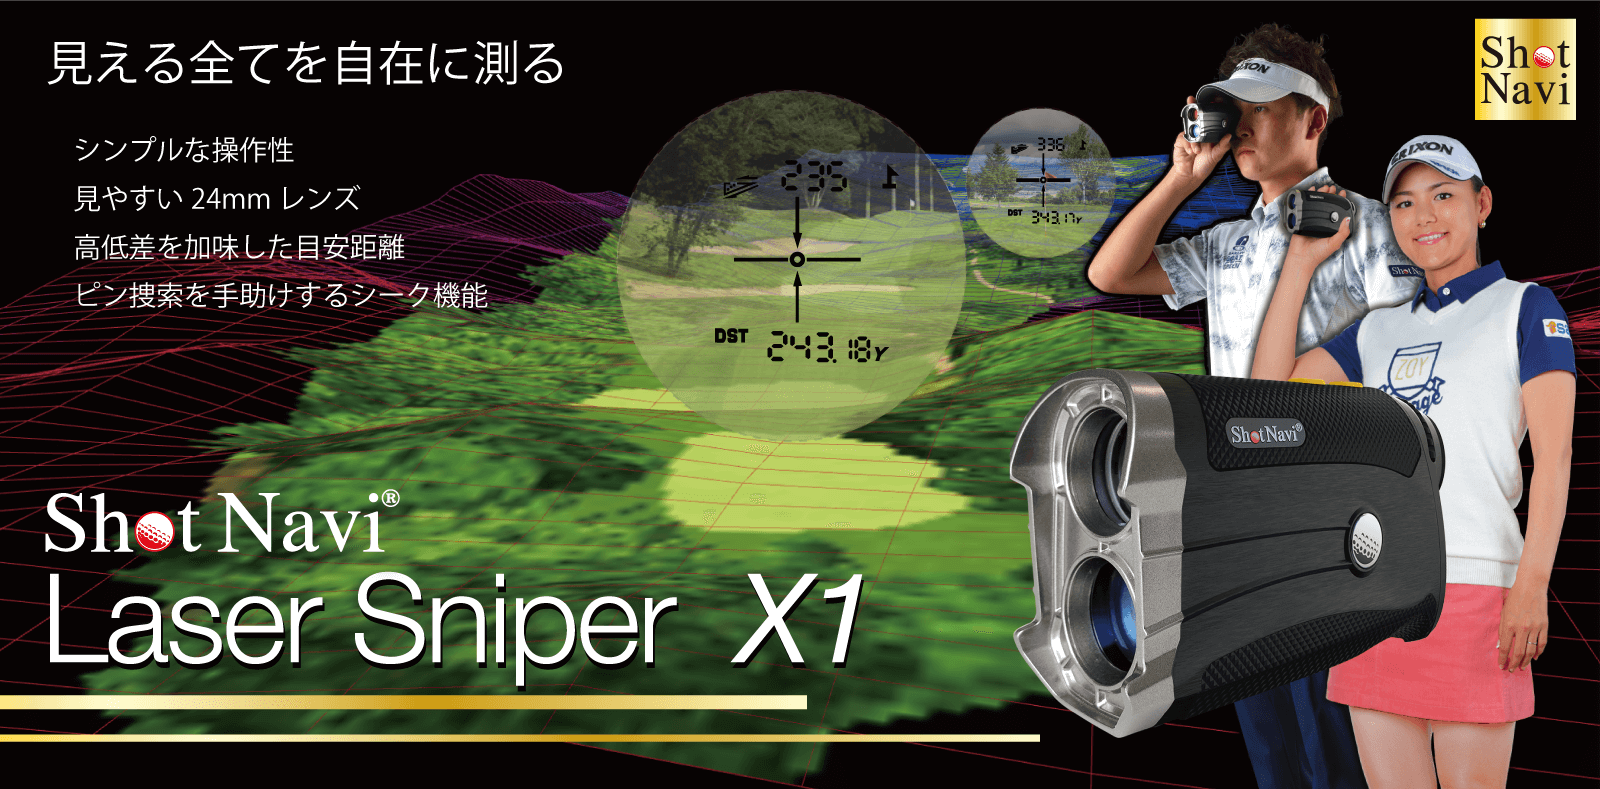 Laser Sniper X1商品イメージ